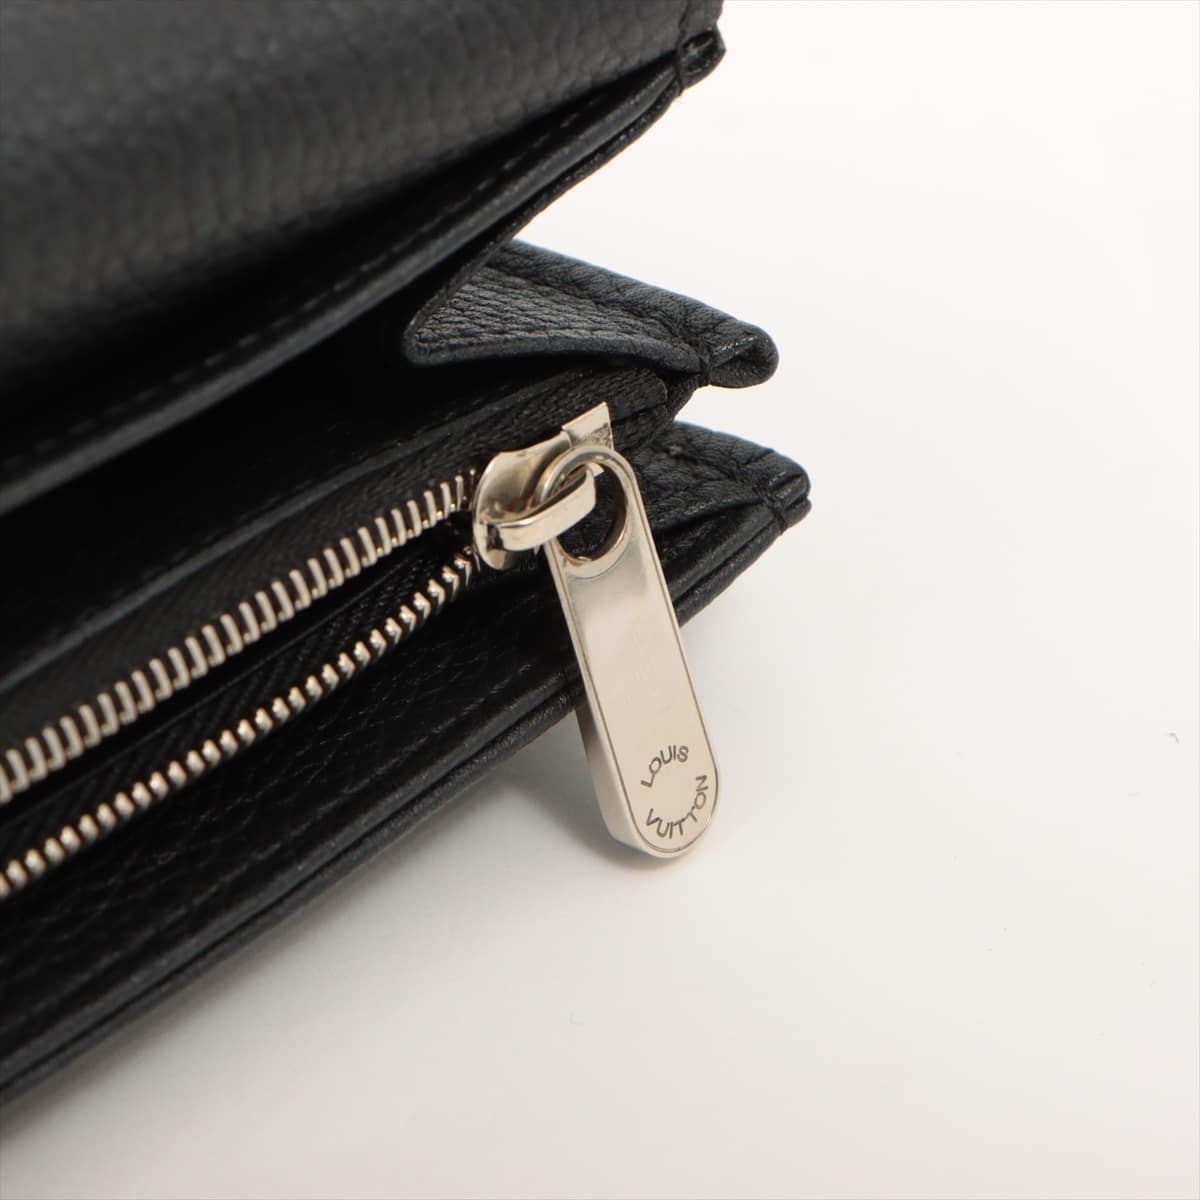 Louis Vuitton Machina Portfolio Illis M60143 Noir